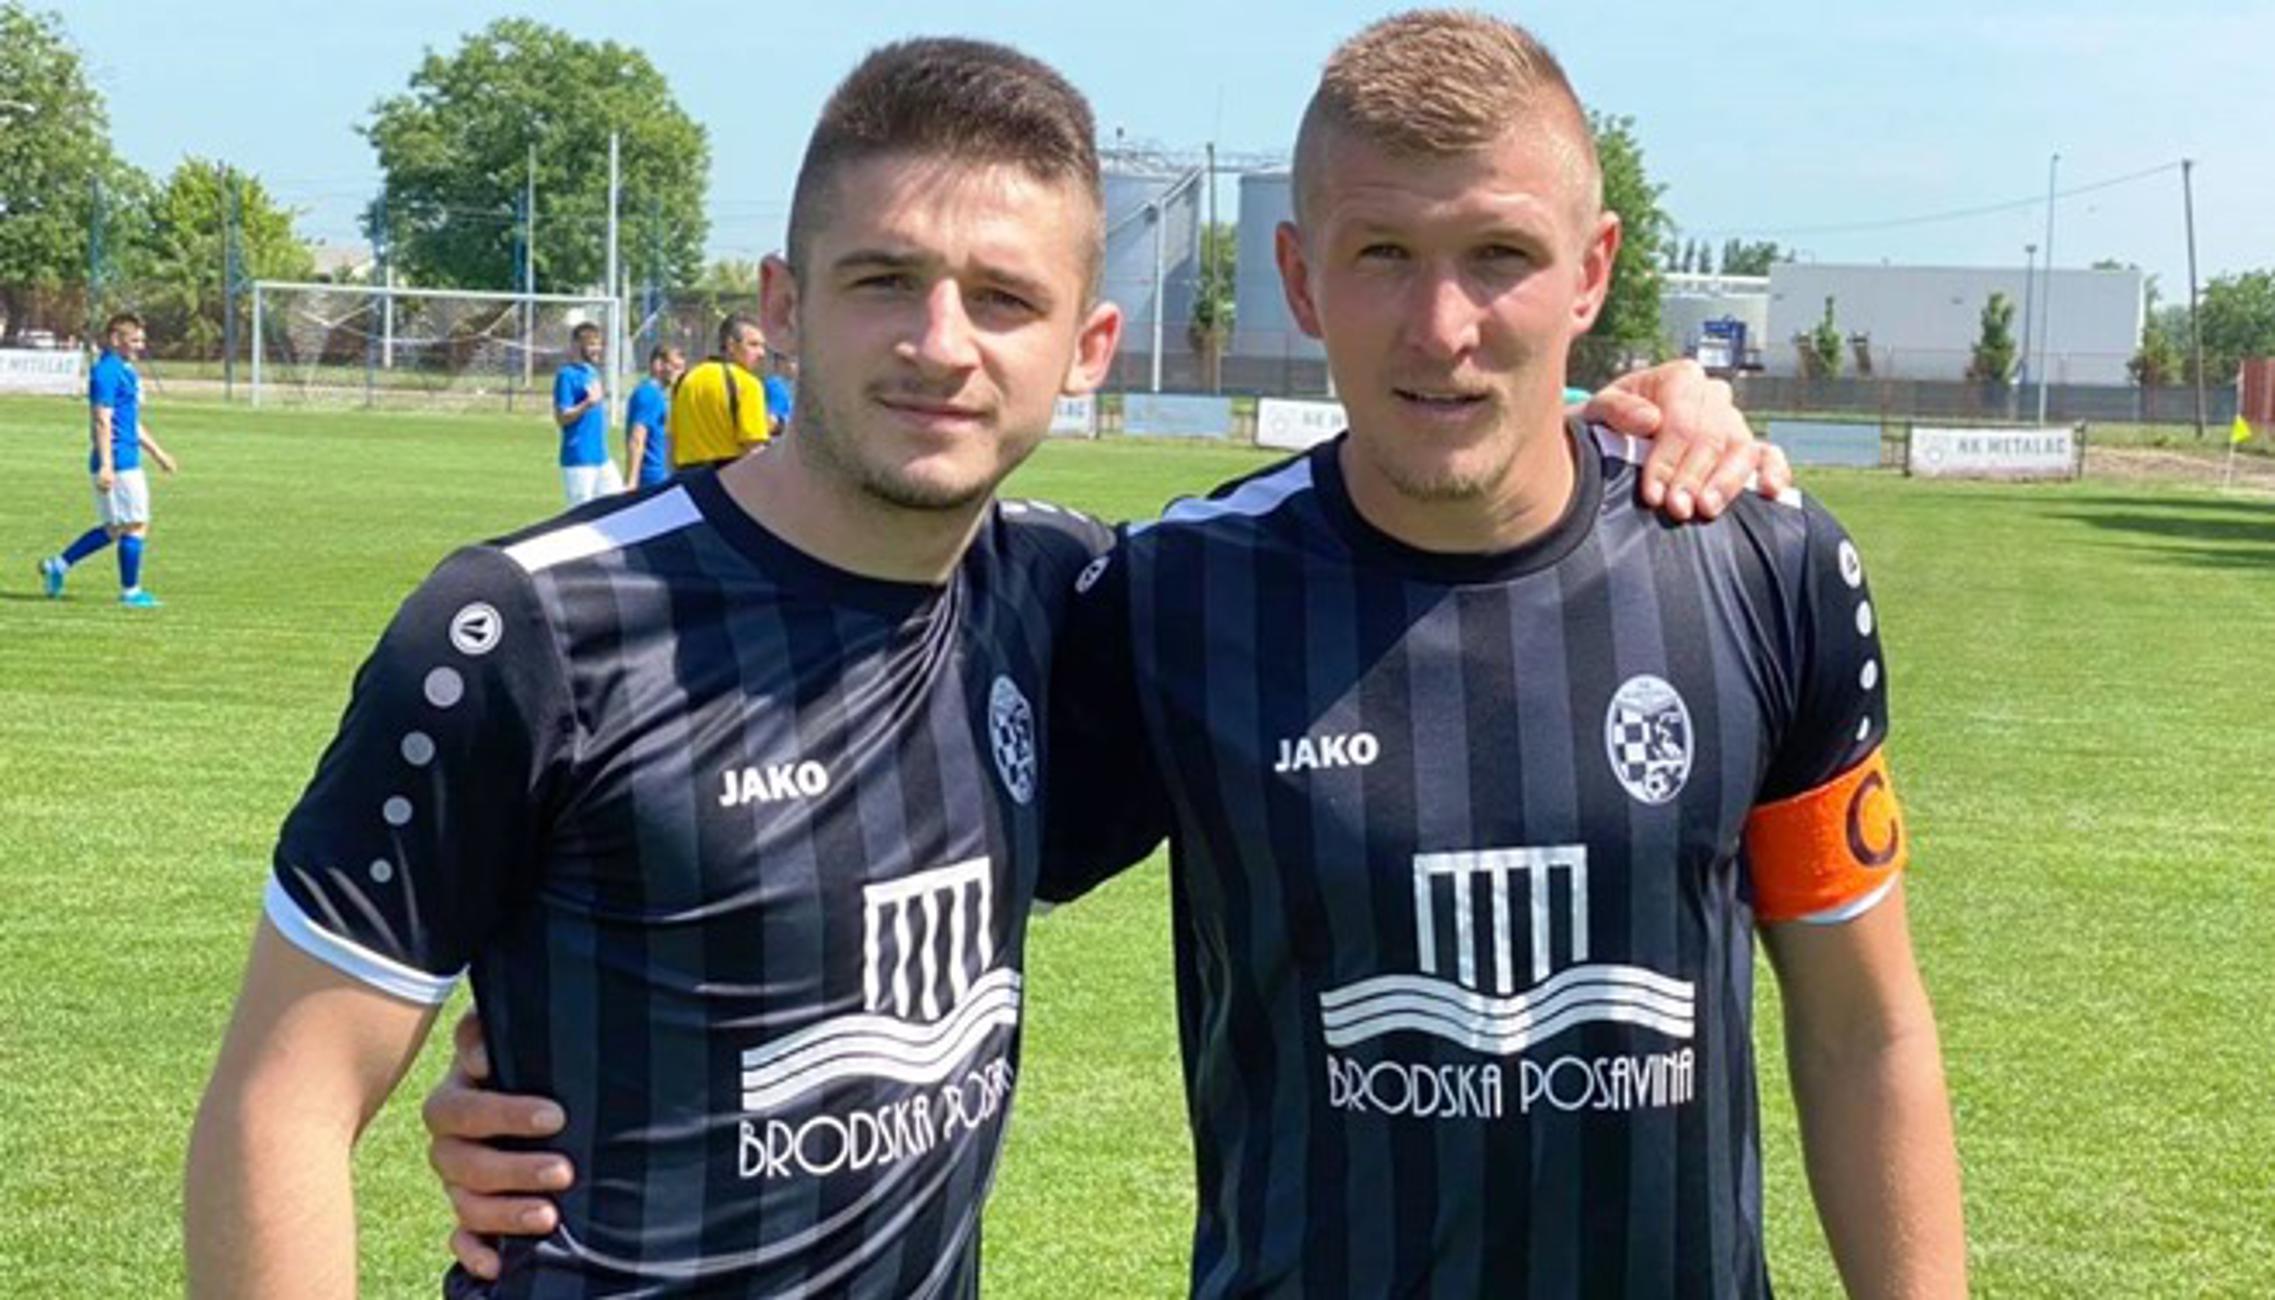 Mirković i Balentović i ostali njihovi suigrači pripremaju se za kvalifikacije.